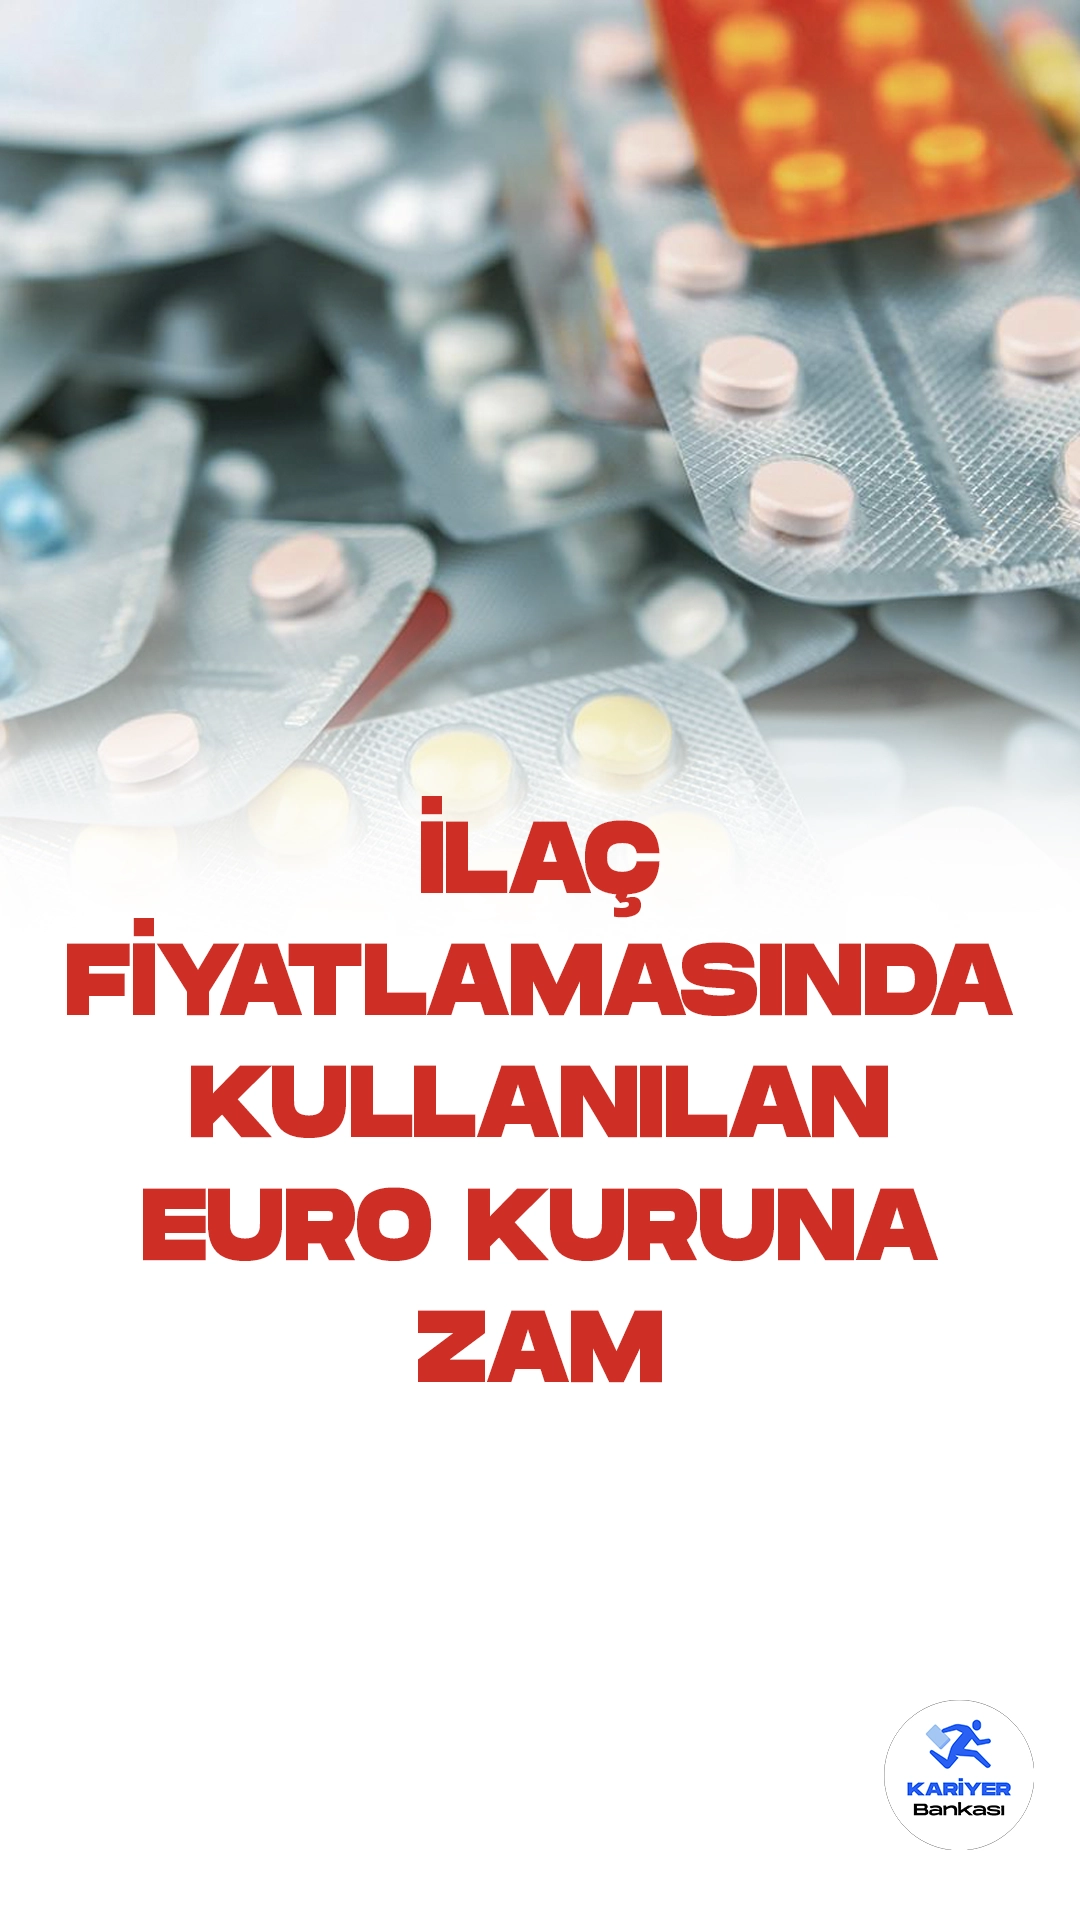 Beşeri Tıbbi Ürünlerin Fiyatı %30,5 Arttı.Türkiye'de beşeri tıbbi ürünlerin fiyatlandırılmasında kullanılan 1 euro değeri, önemli bir kararla yüzde 30,5 artırılarak 14,0387 lira olarak belirlendi. Cumhurbaşkanı tarafından imzalanan "Beşeri Tıbbi Ürünlerin Fiyatlandırılmasına Dair Kararda Değişiklik Yapılması Hakkında Karar", Resmi Gazete'de duyuruldu.